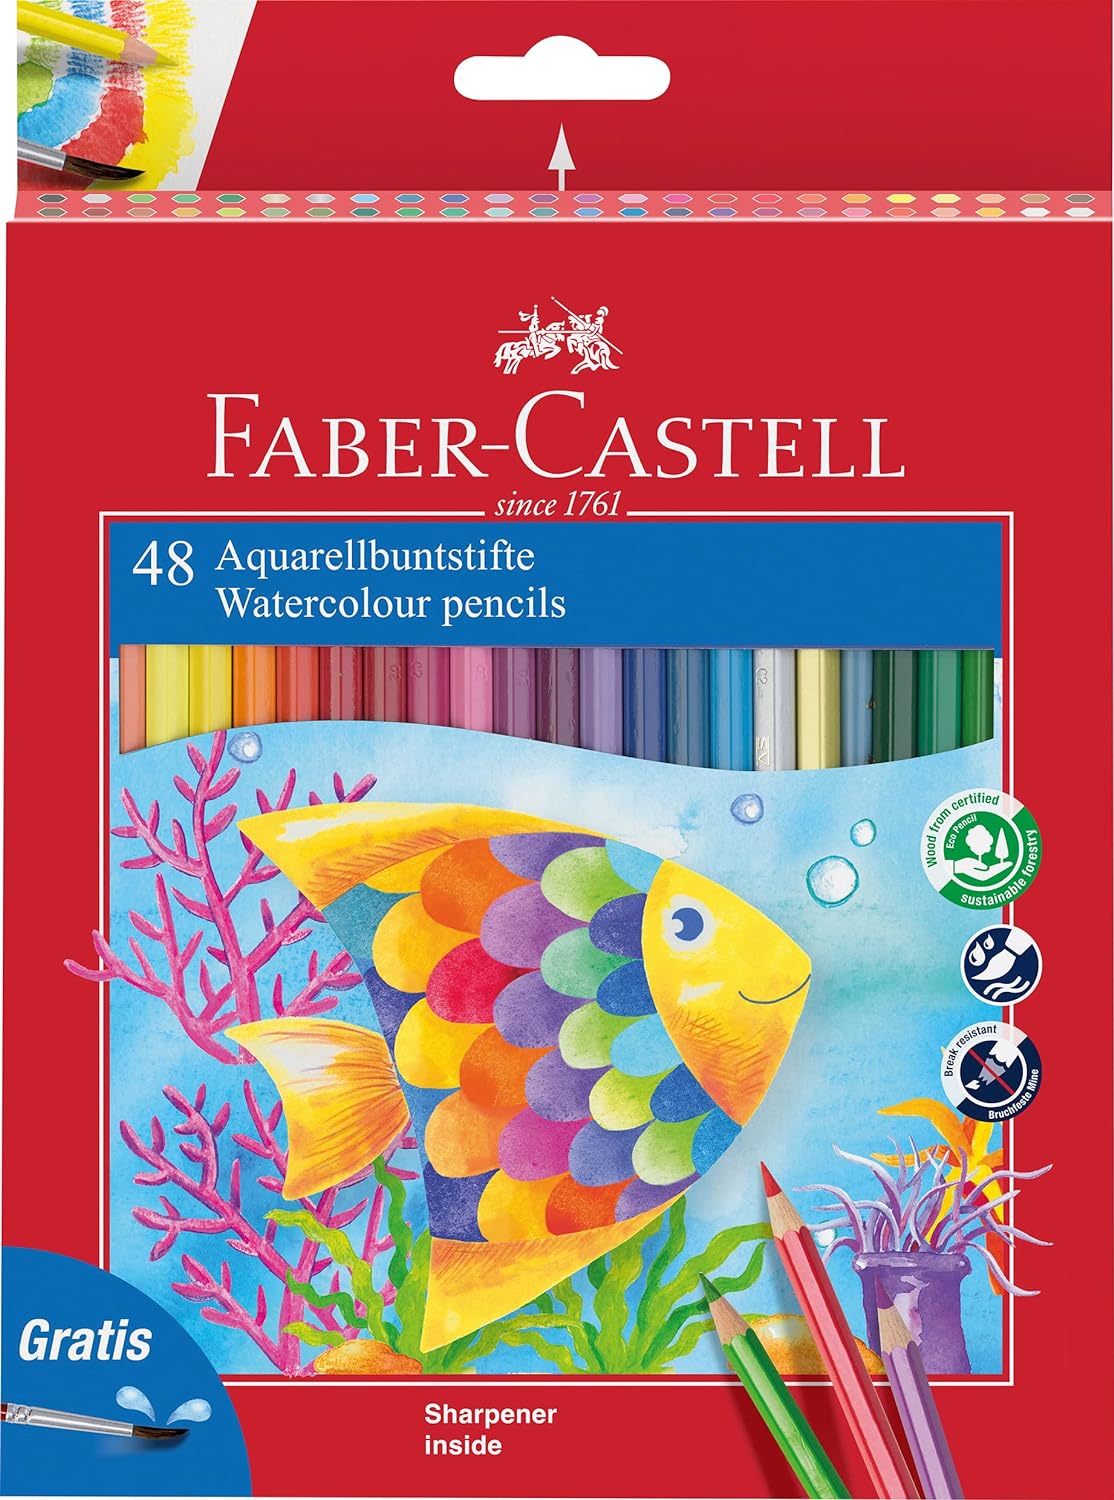 Faber-Castell Classic Color Crayons Aquarelle Paquet de 48 Crayons de Couleur Aquarelle Hexagonaux + Pinceau - Résistance à la Casse - Couleurs Assorties